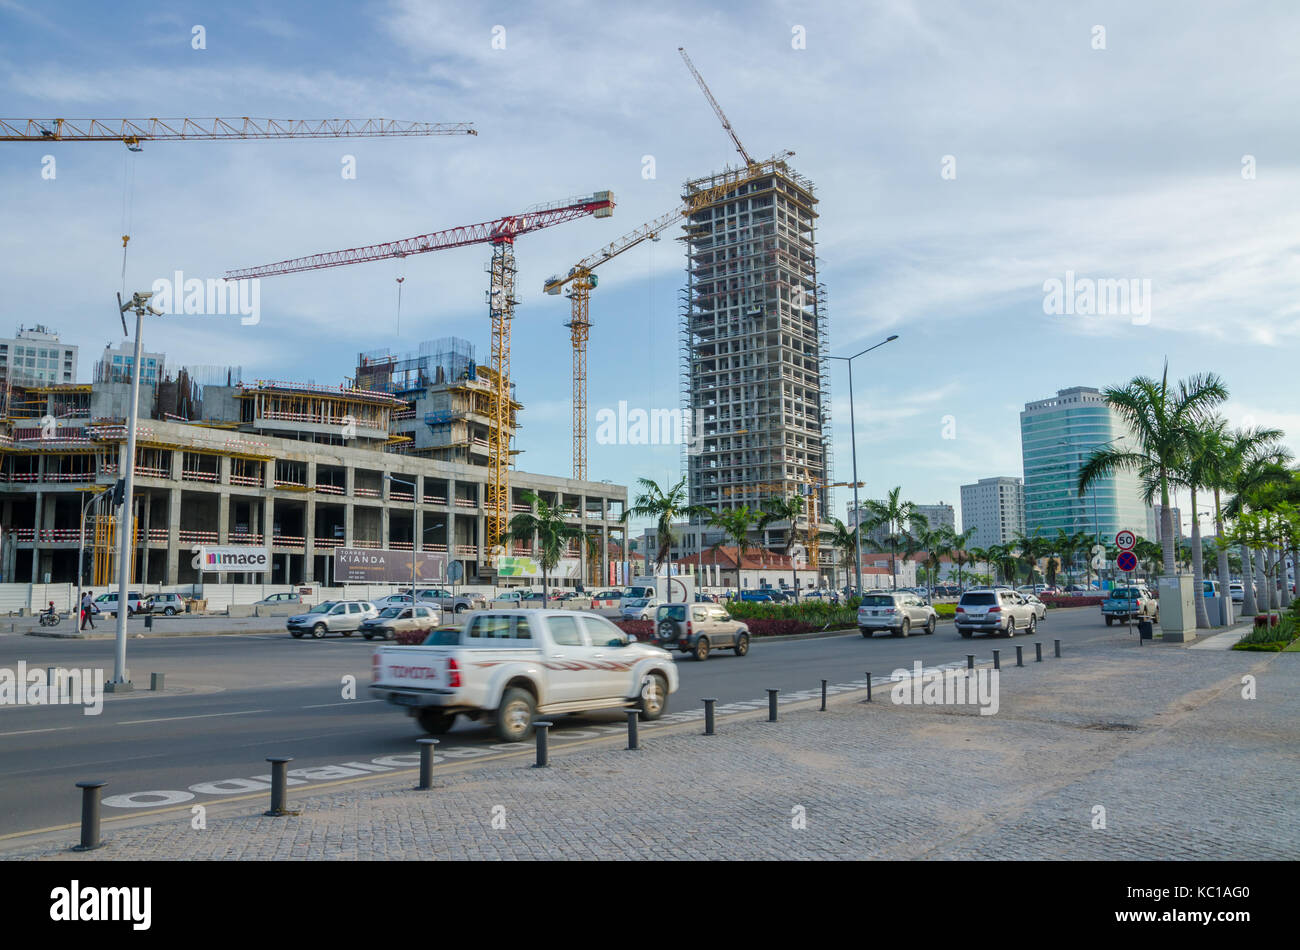 La construction de nombreux immeubles de grande hauteur avec grandes grues à côté mer de capitale, Luanda, Angola, Afrique du Sud Banque D'Images